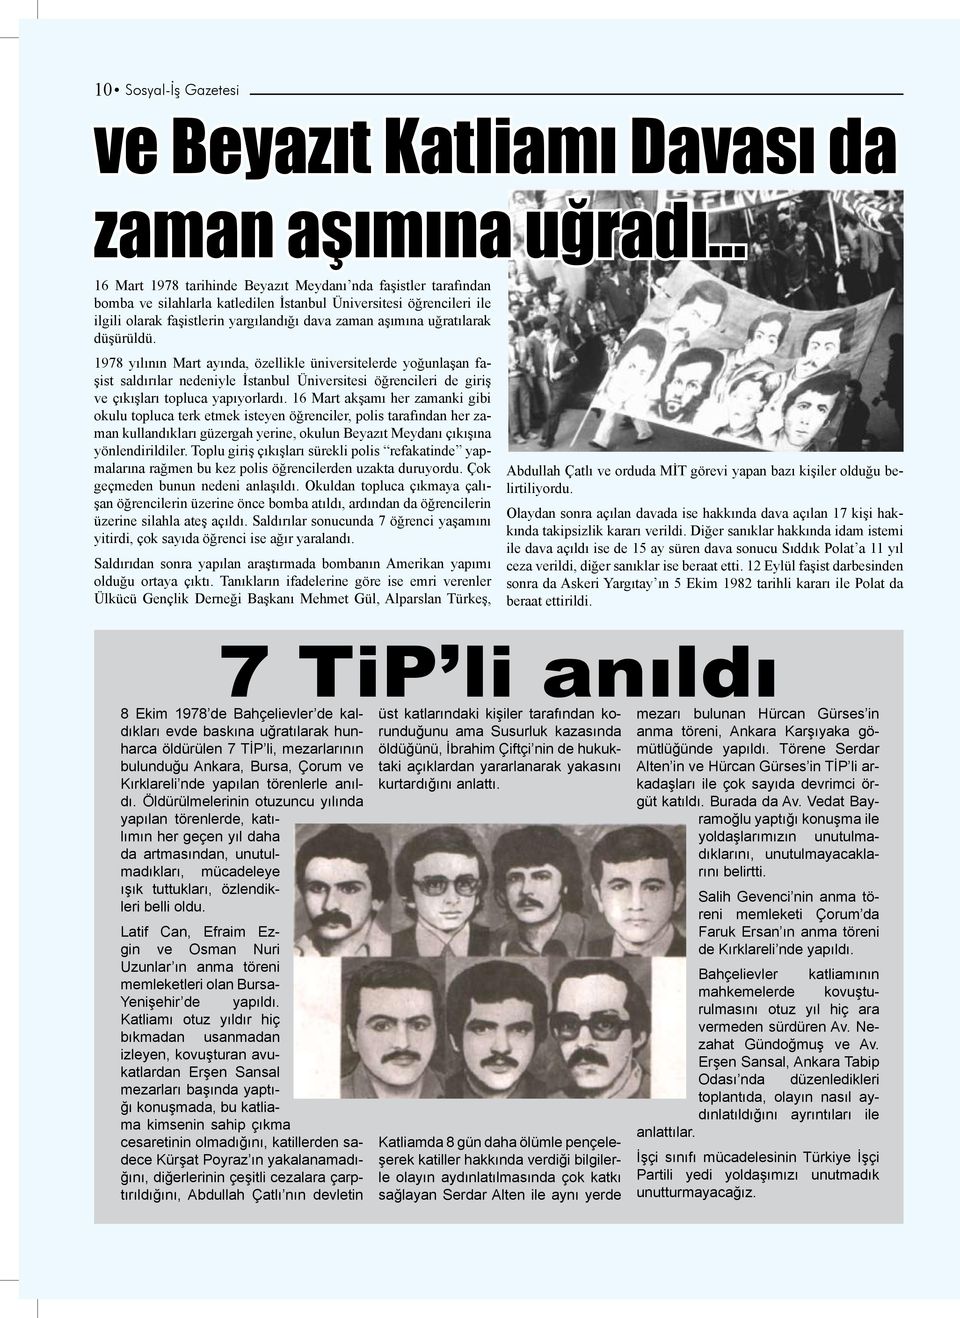 uğratılarak düşürüldü. 1978 yılının Mart ayında, özellikle üniversitelerde yoğunlaşan faşist saldırılar nedeniyle İstanbul Üniversitesi öğrencileri de giriş ve çıkışları topluca yapıyorlardı.